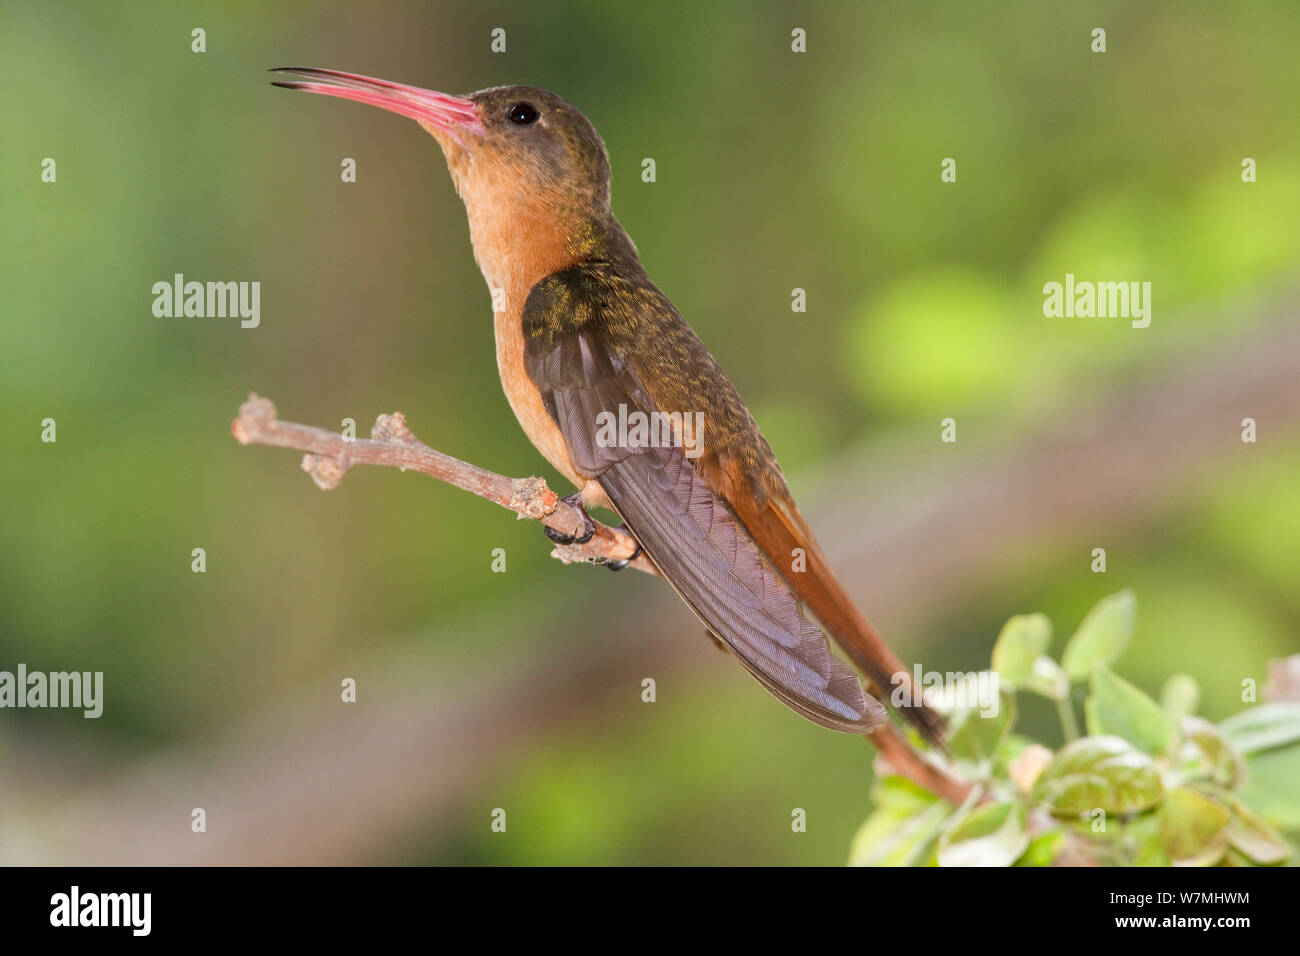 Cinnamon Hummingbird (Amazilia rutila graysoni). Maria Madre Island, Islas Marias Biosphere Reserve, Sea of Cortez (Gulf of California), Mexico, June. Stock Photo